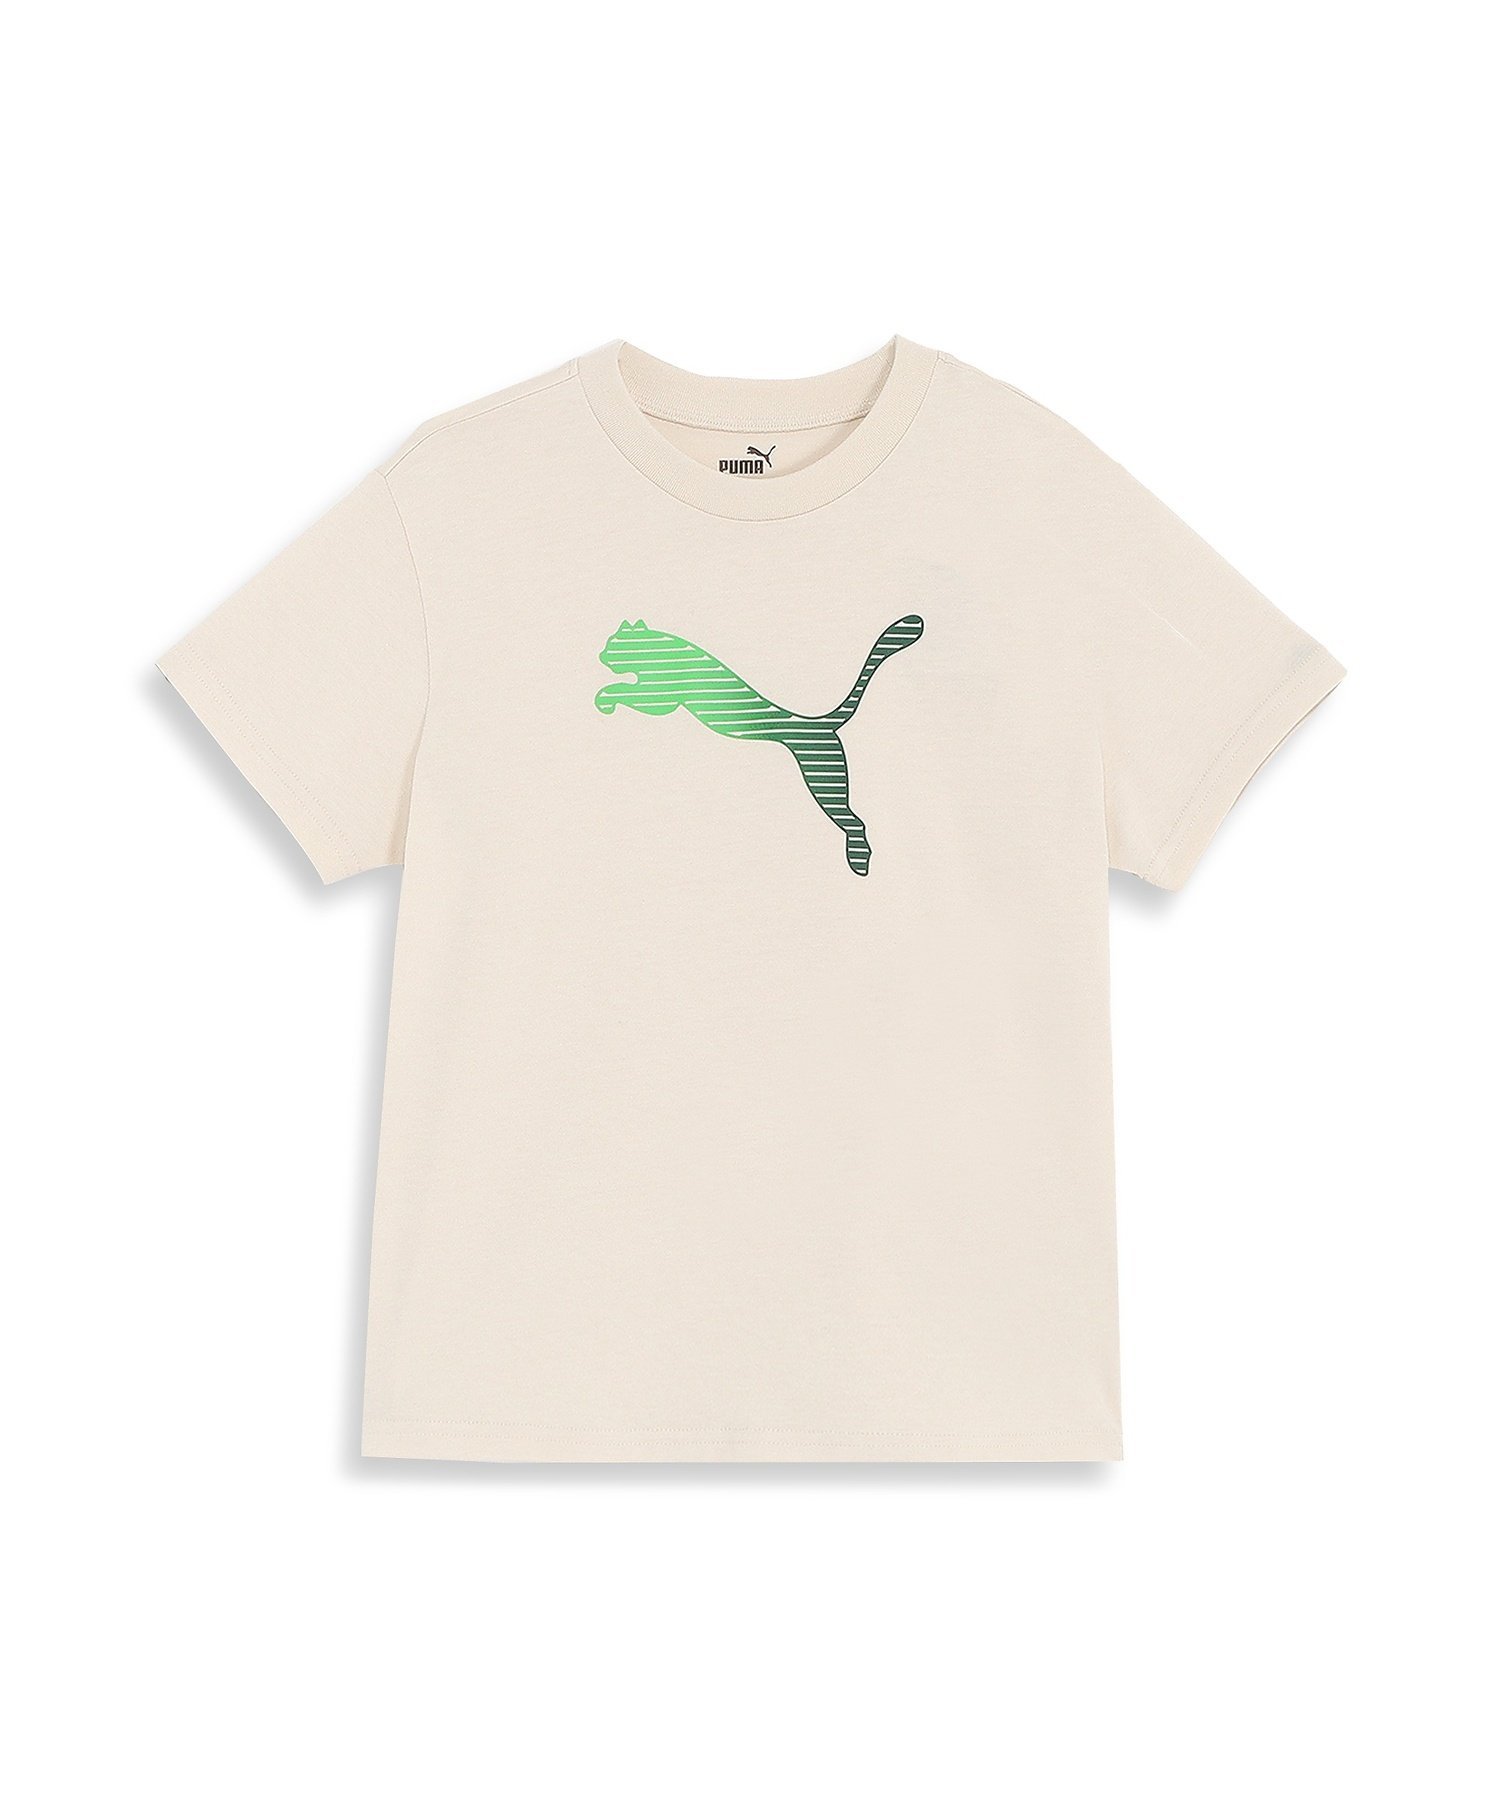 楽天Rakuten FashionPUMA キッズ ボーイズ ESSプラス MX NO1 ロゴ リラックス 半袖 Tシャツ 120-160cm プーマ トップス カットソー・Tシャツ